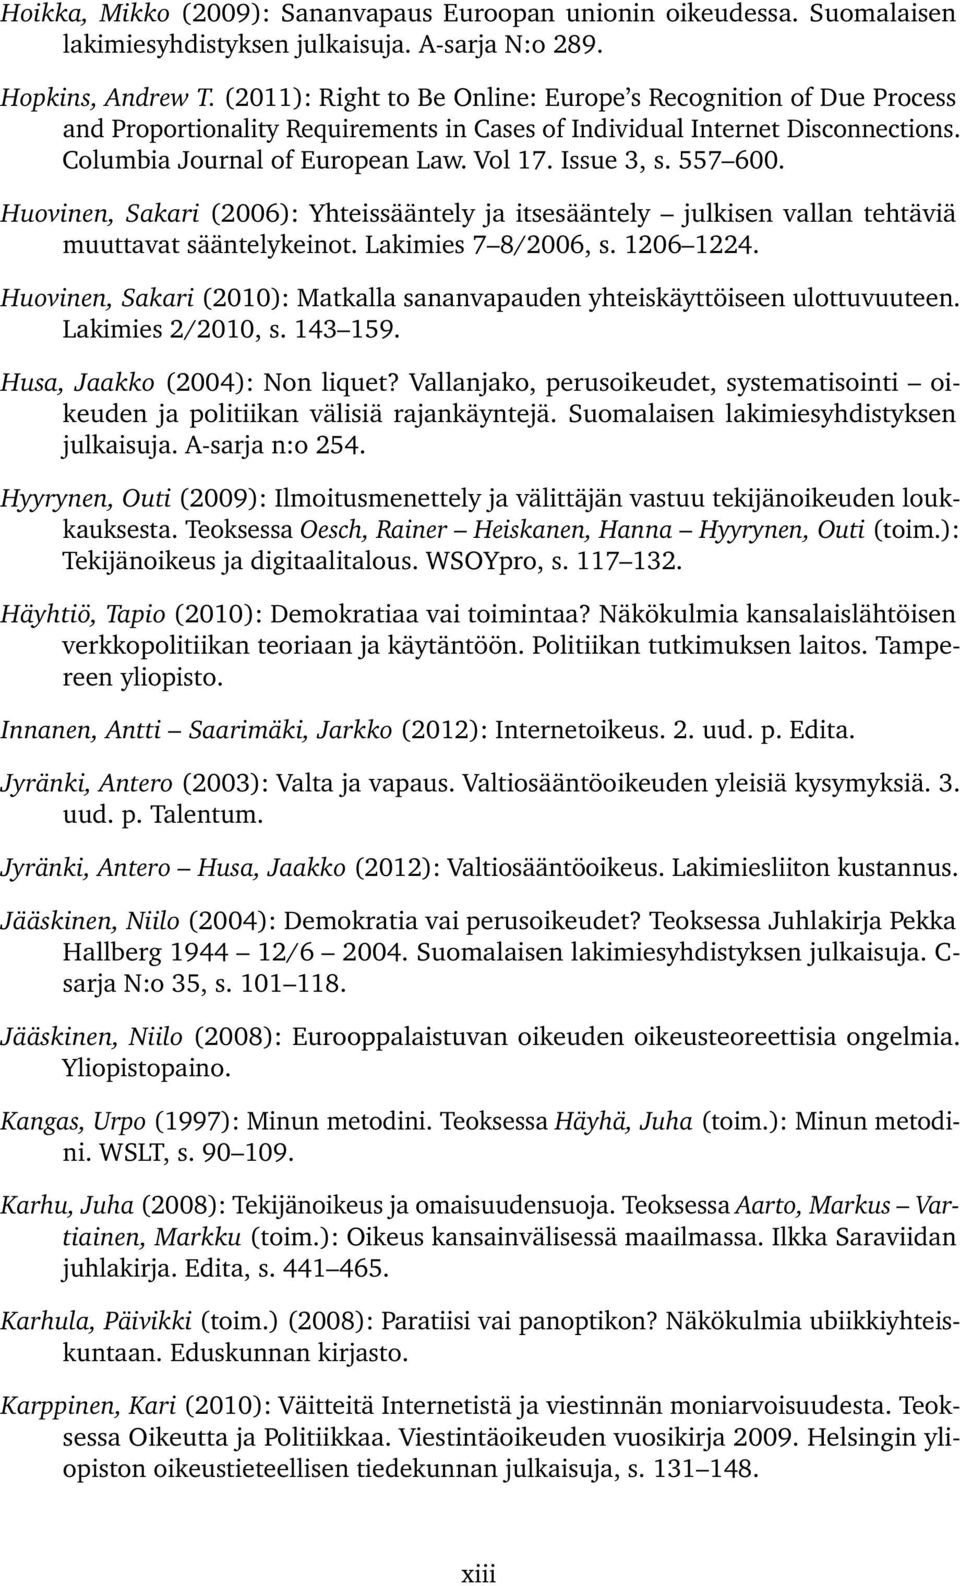 557 600. Huovinen, Sakari (2006): Yhteissääntely ja itsesääntely julkisen vallan tehtäviä muuttavat sääntelykeinot. Lakimies 7 8/2006, s. 1206 1224.